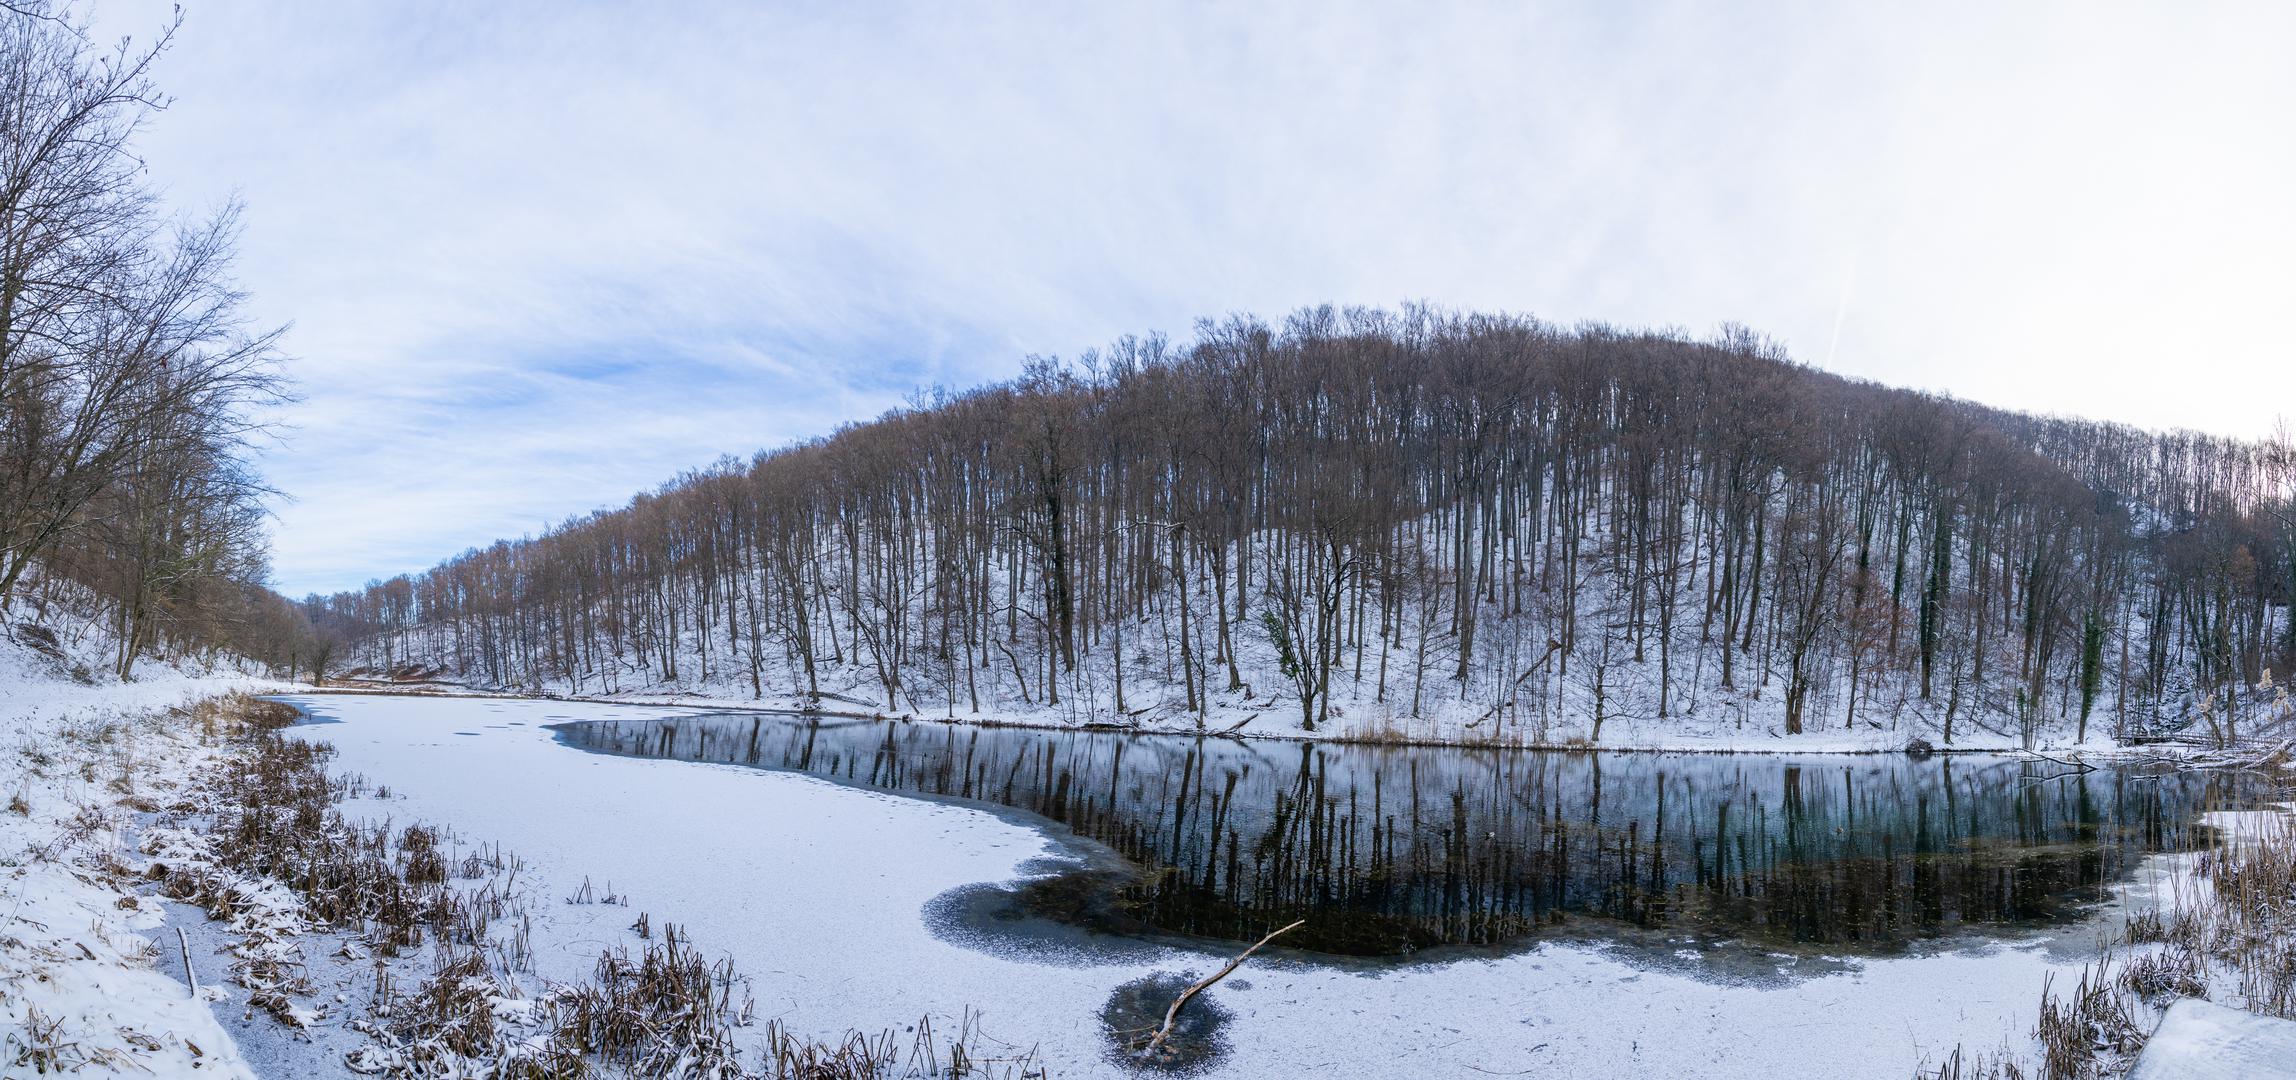 Park-šuma Jankovac trenutačno je prekrivena bijelim pokrivačem snijega, stvarajući bajkovitu atmosferu koja mami posjetitelje iz različitih dijelova Hrvatske.